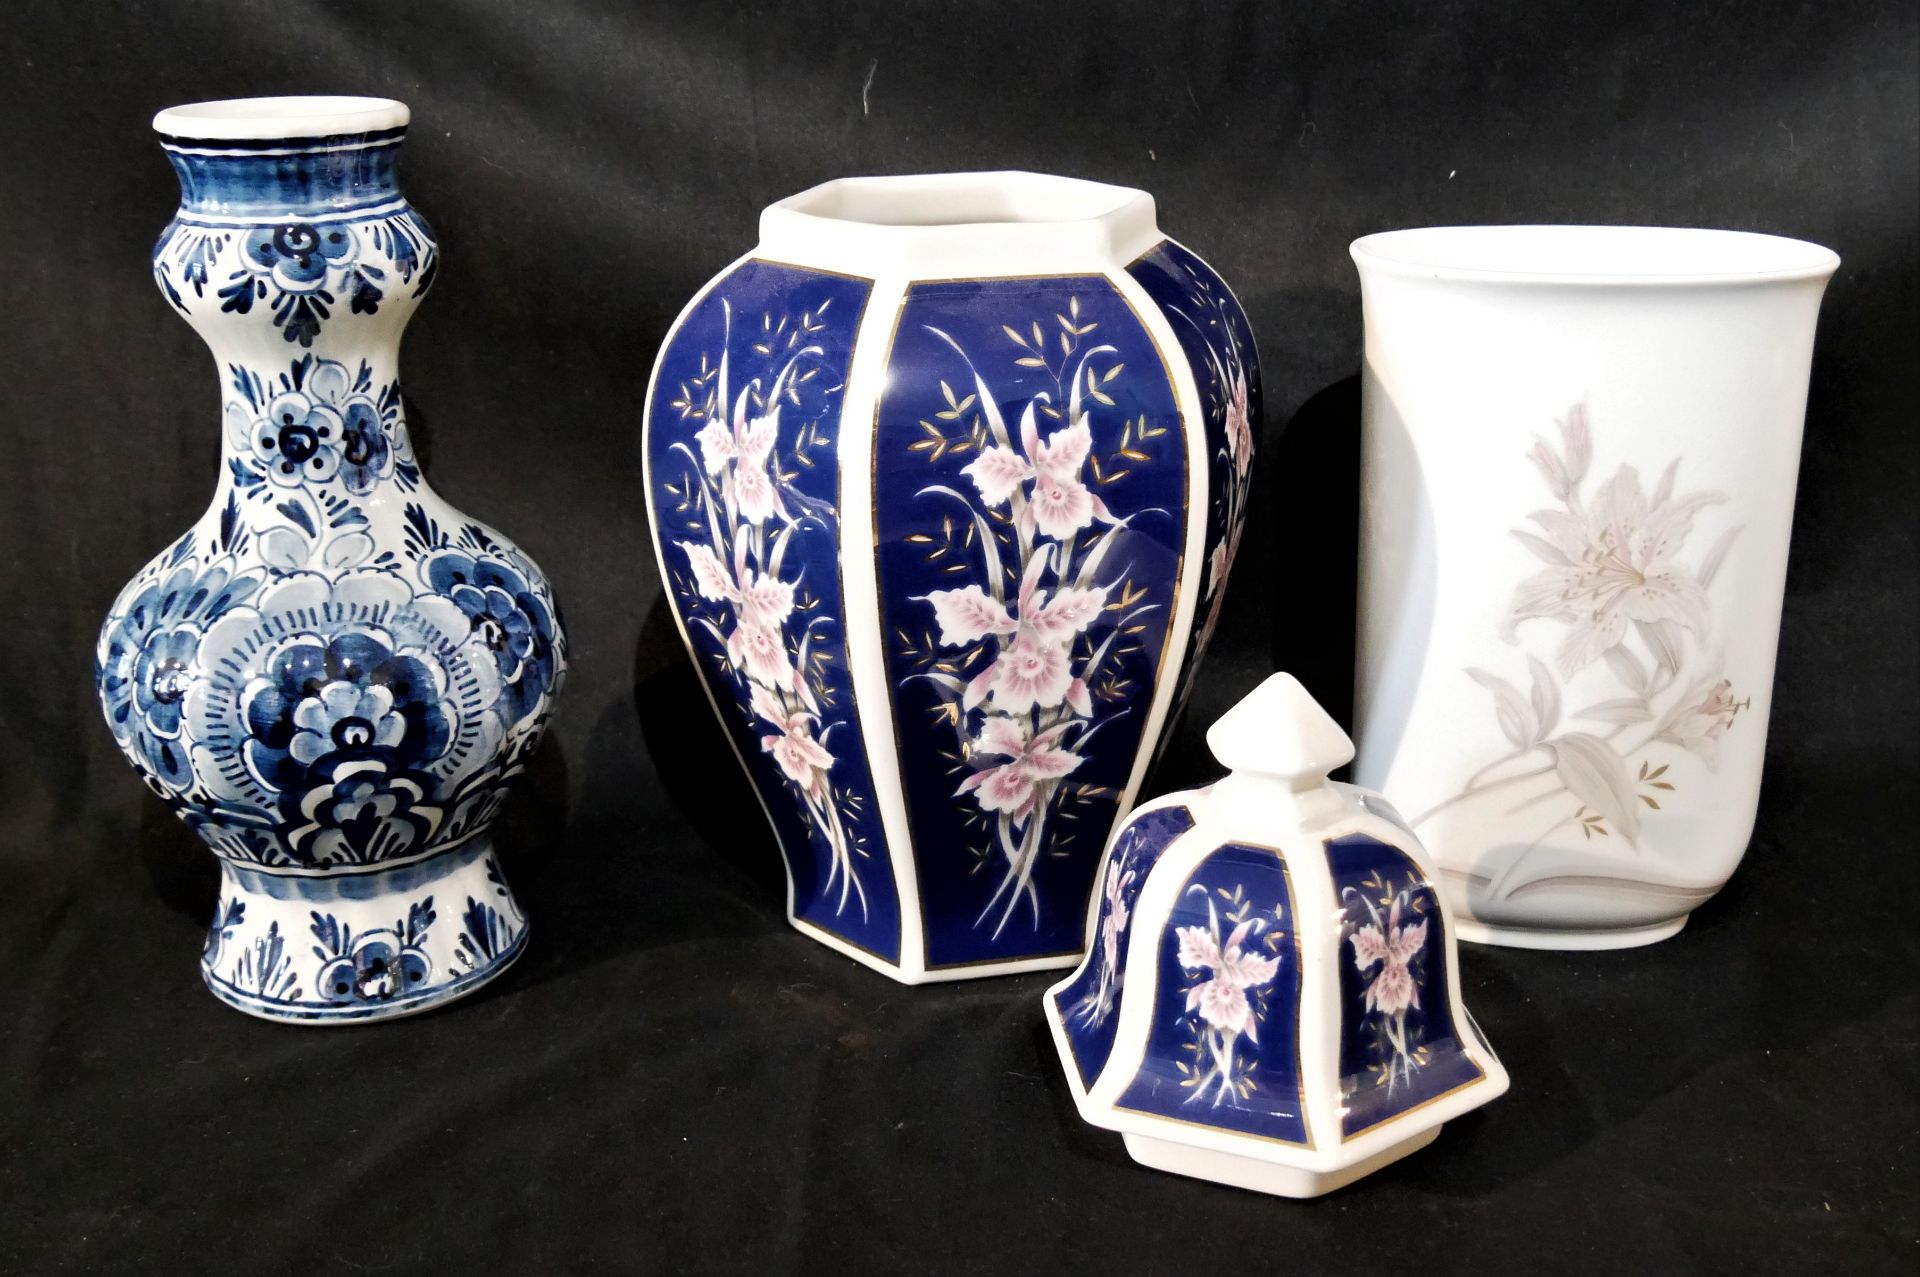 Lot Porzellan & Keramik aus Auflösung, insgesamt 3 Stück. Dabei 1x Delft, 1x Kaiser sowie 1 - Bild 2 aus 3